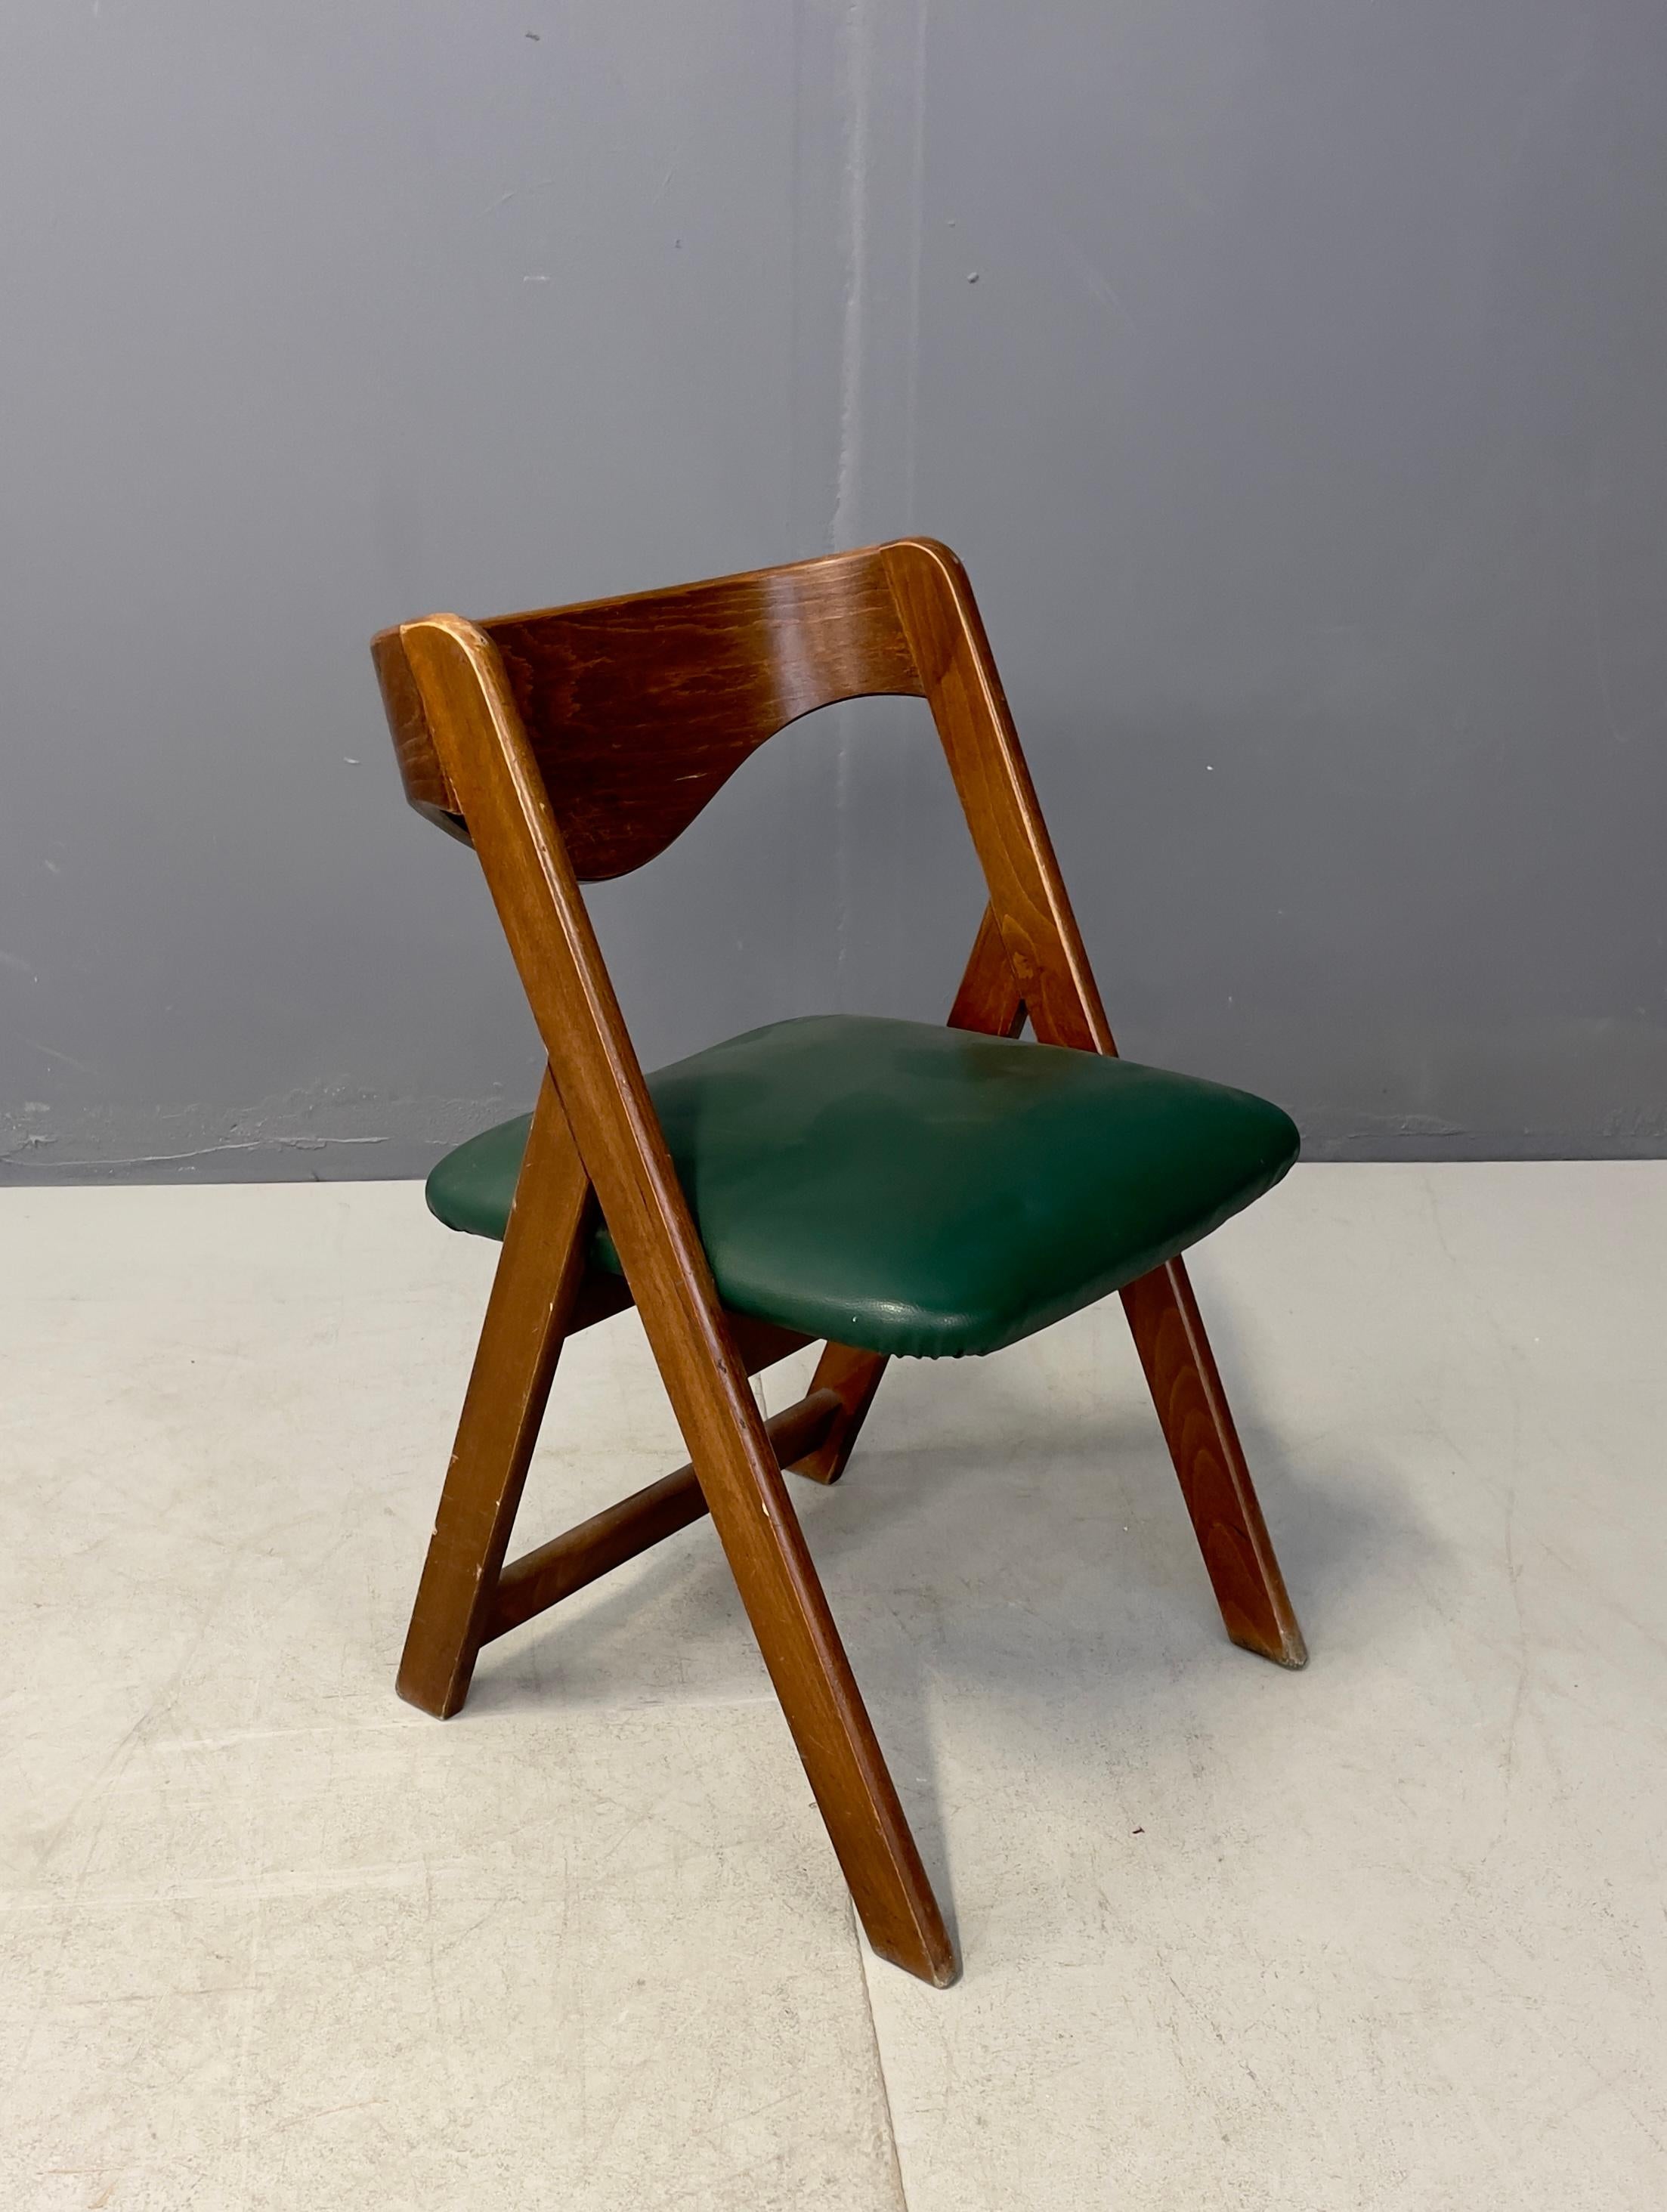 Trois chaises en bois avec des sièges en cuir vert. 1960s.
Très belles chaises de salon en bon état.